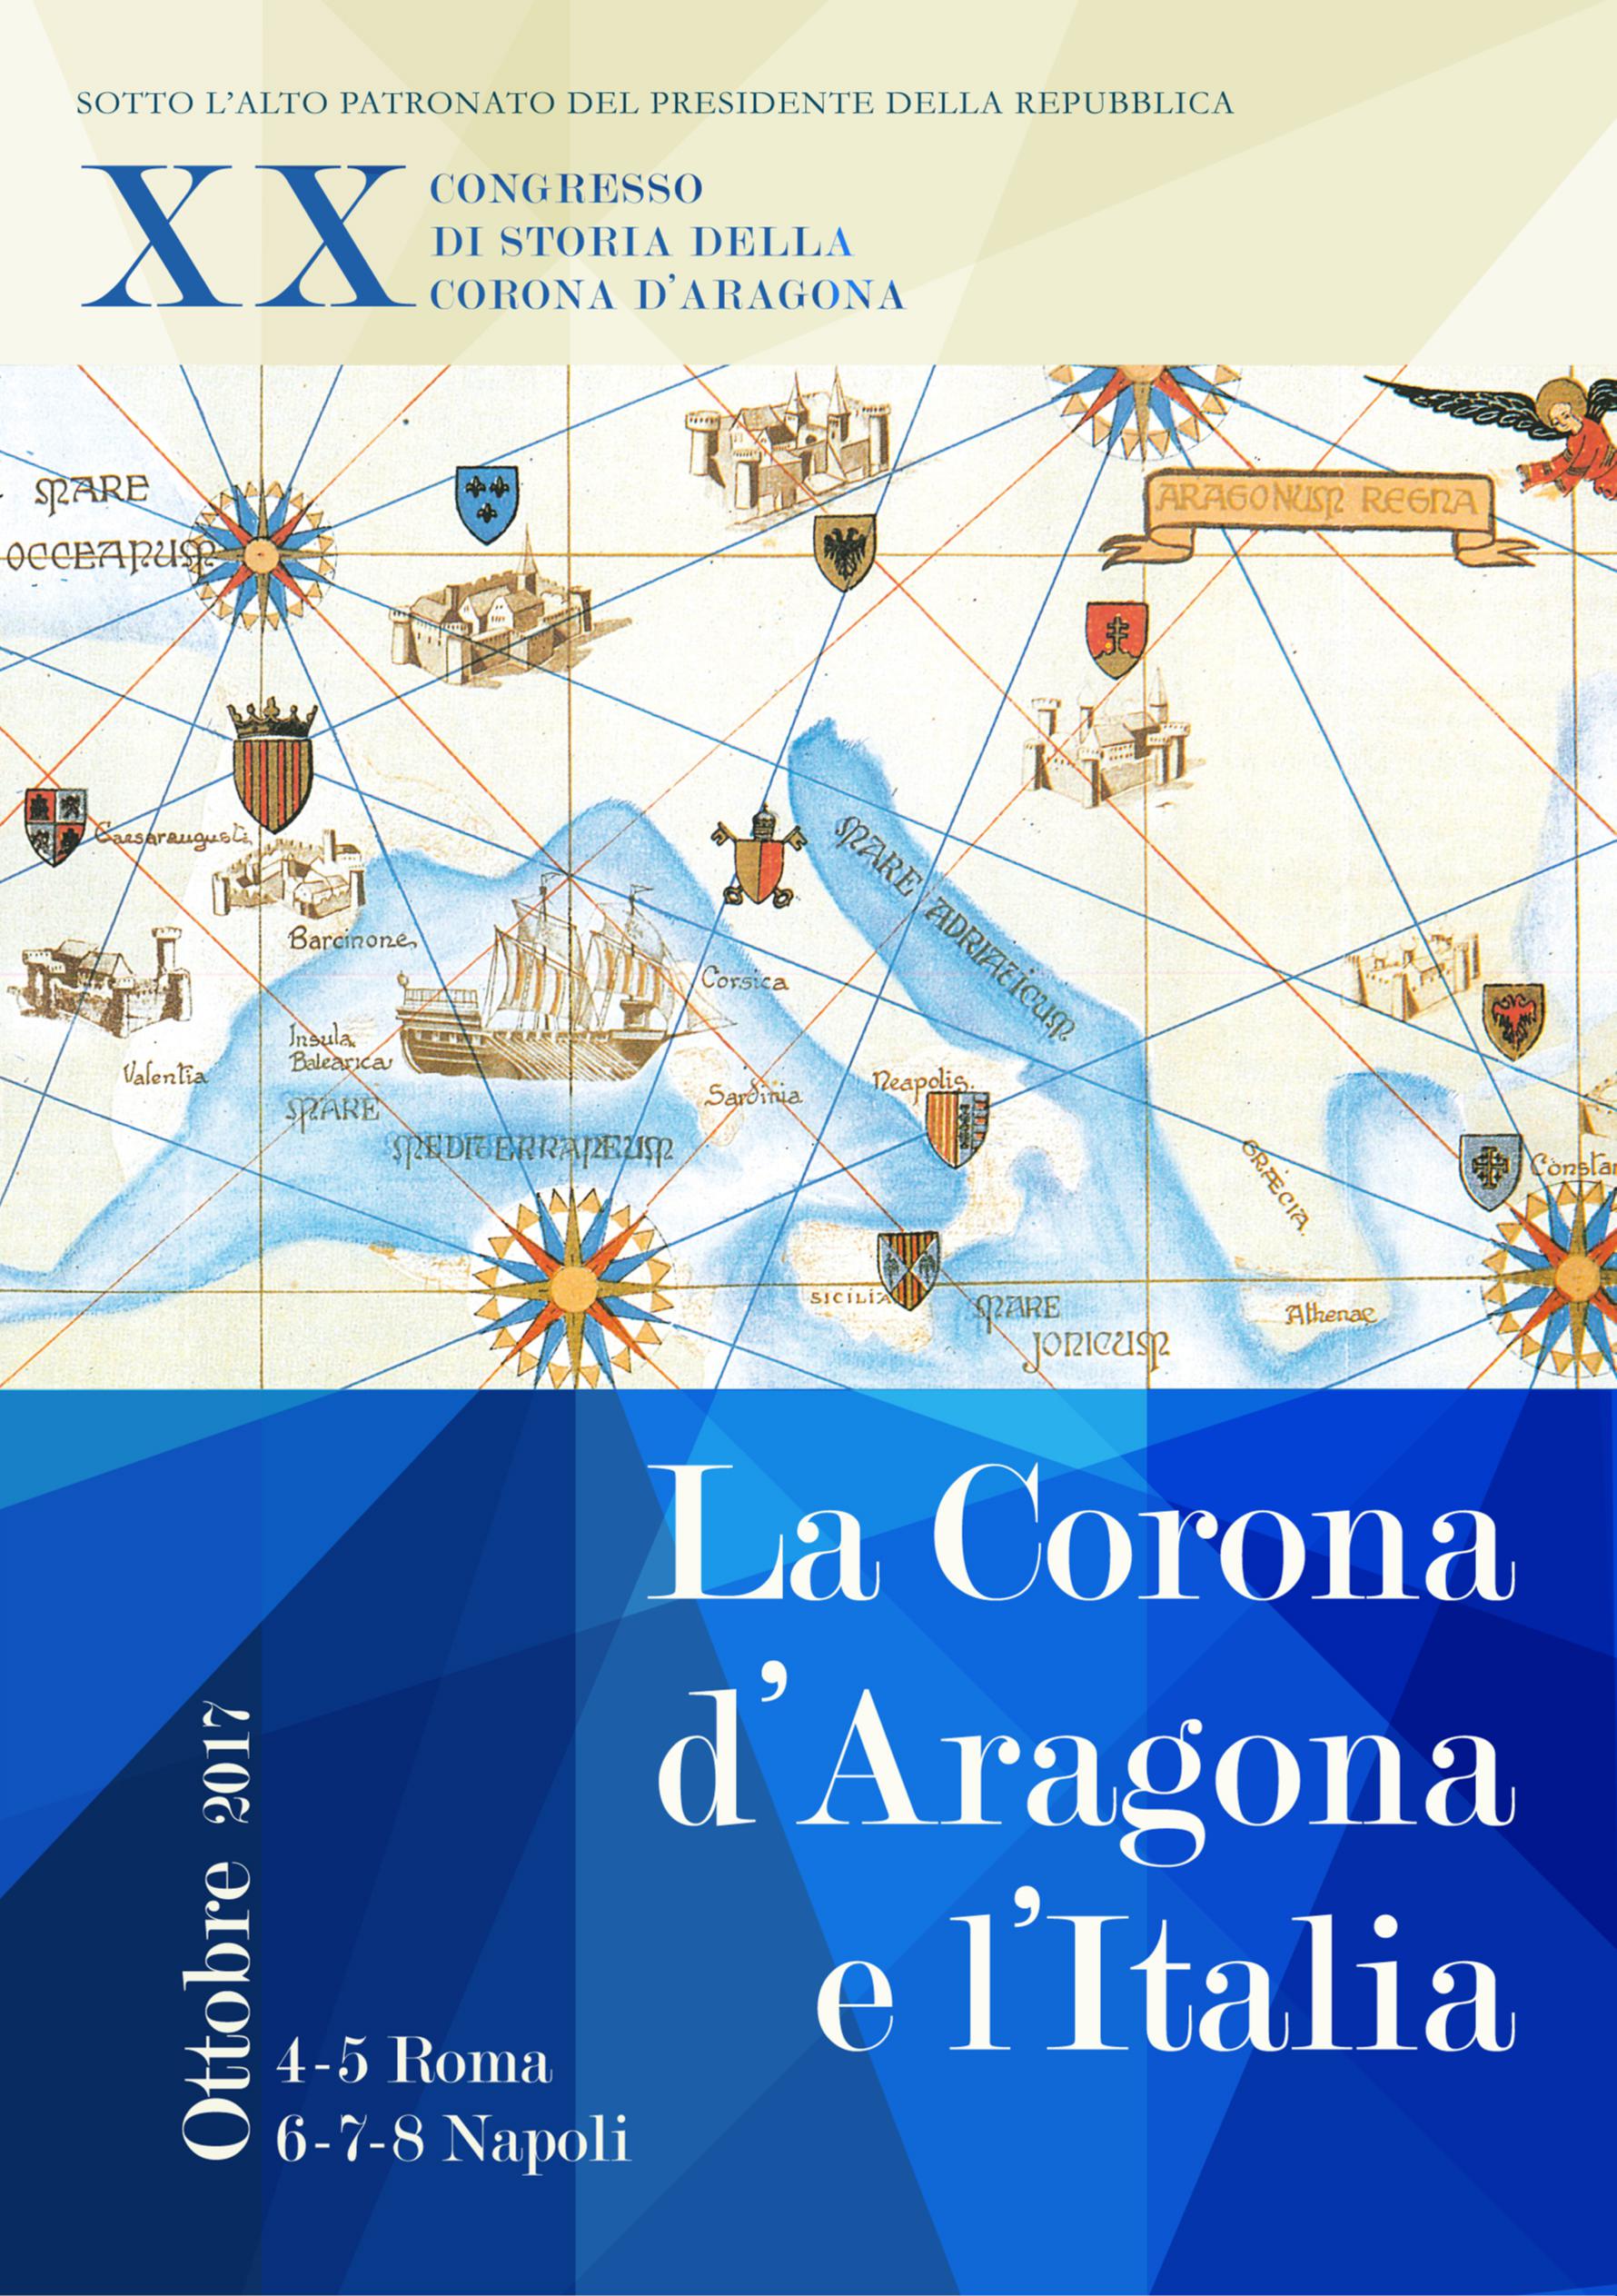  Napoli, al Maschio angioino il XX Congresso di Storia della Corona d’Aragona